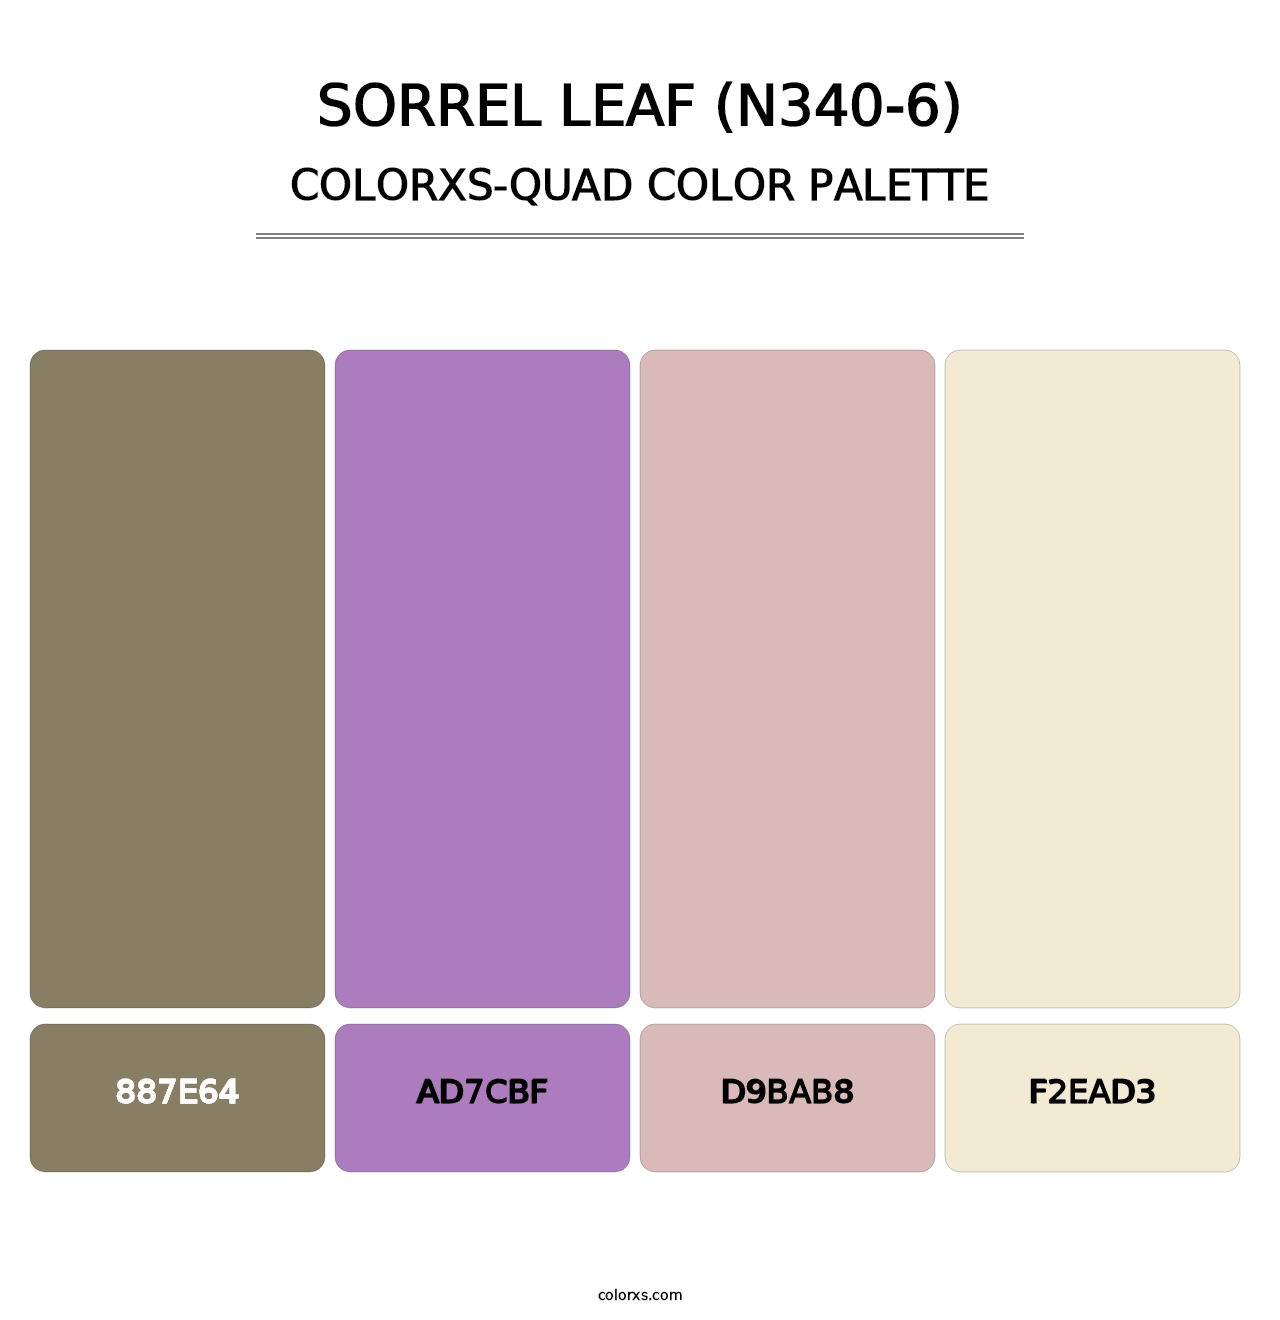 Sorrel Leaf (N340-6) - Colorxs Quad Palette